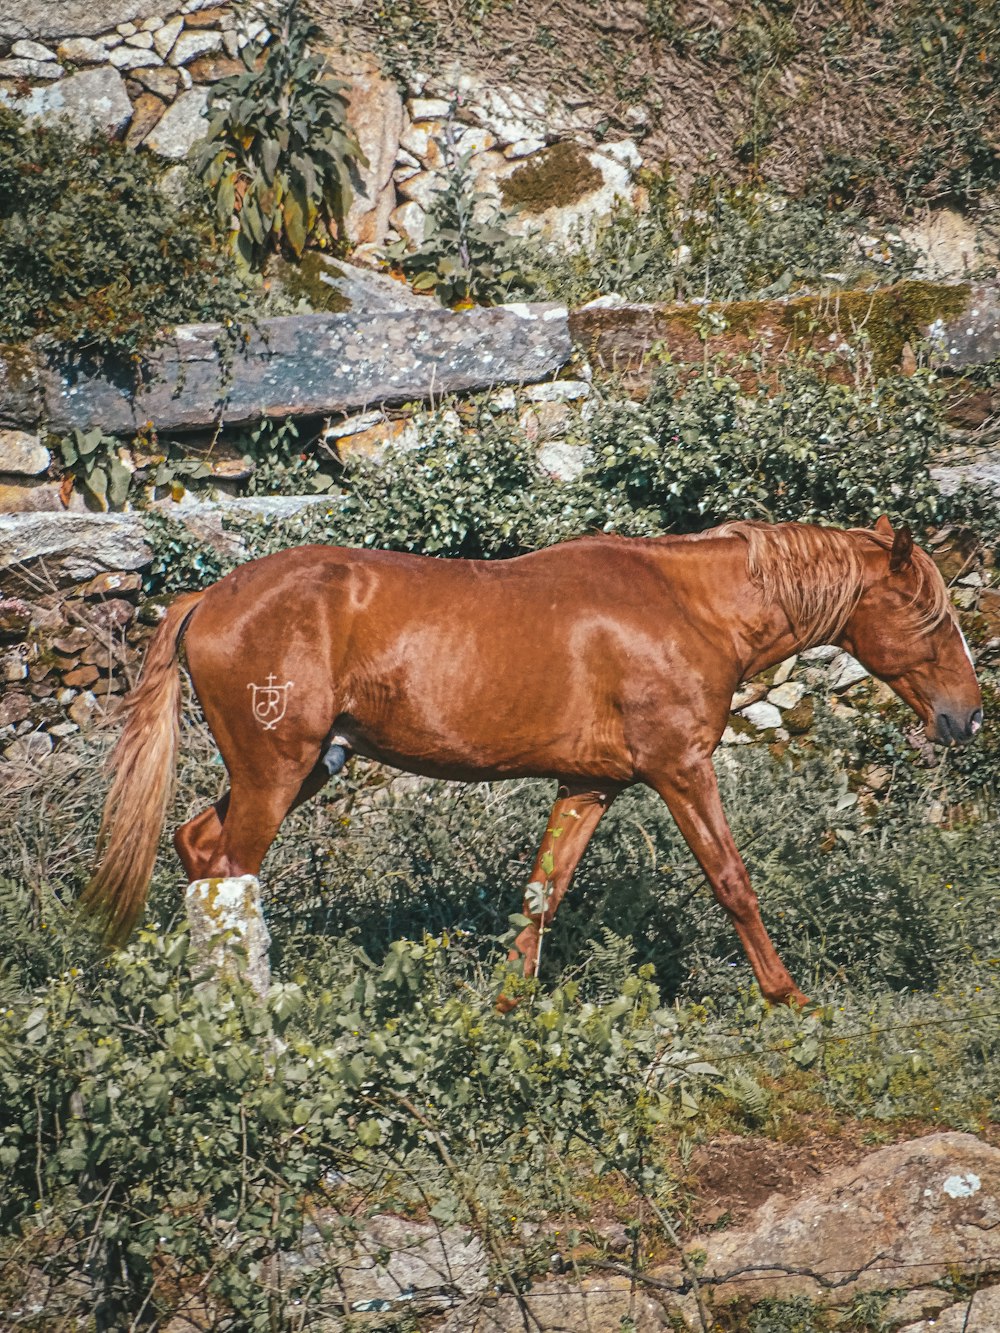 un cavallo marrone in piedi in cima a un campo verde lussureggiante